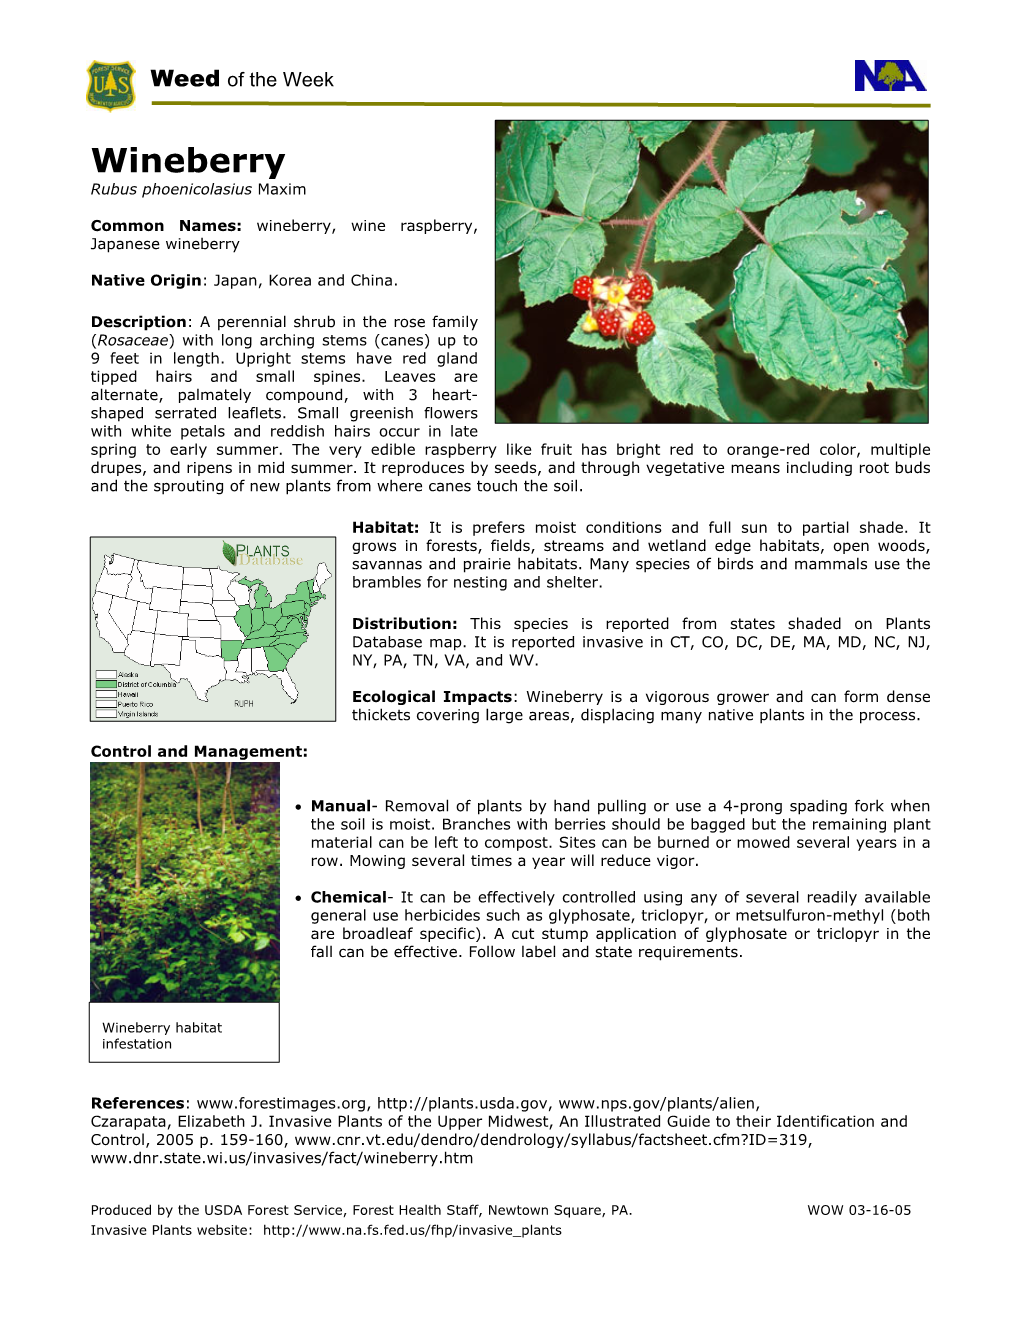 Wineberry Rubus Phoenicolasius Maxim